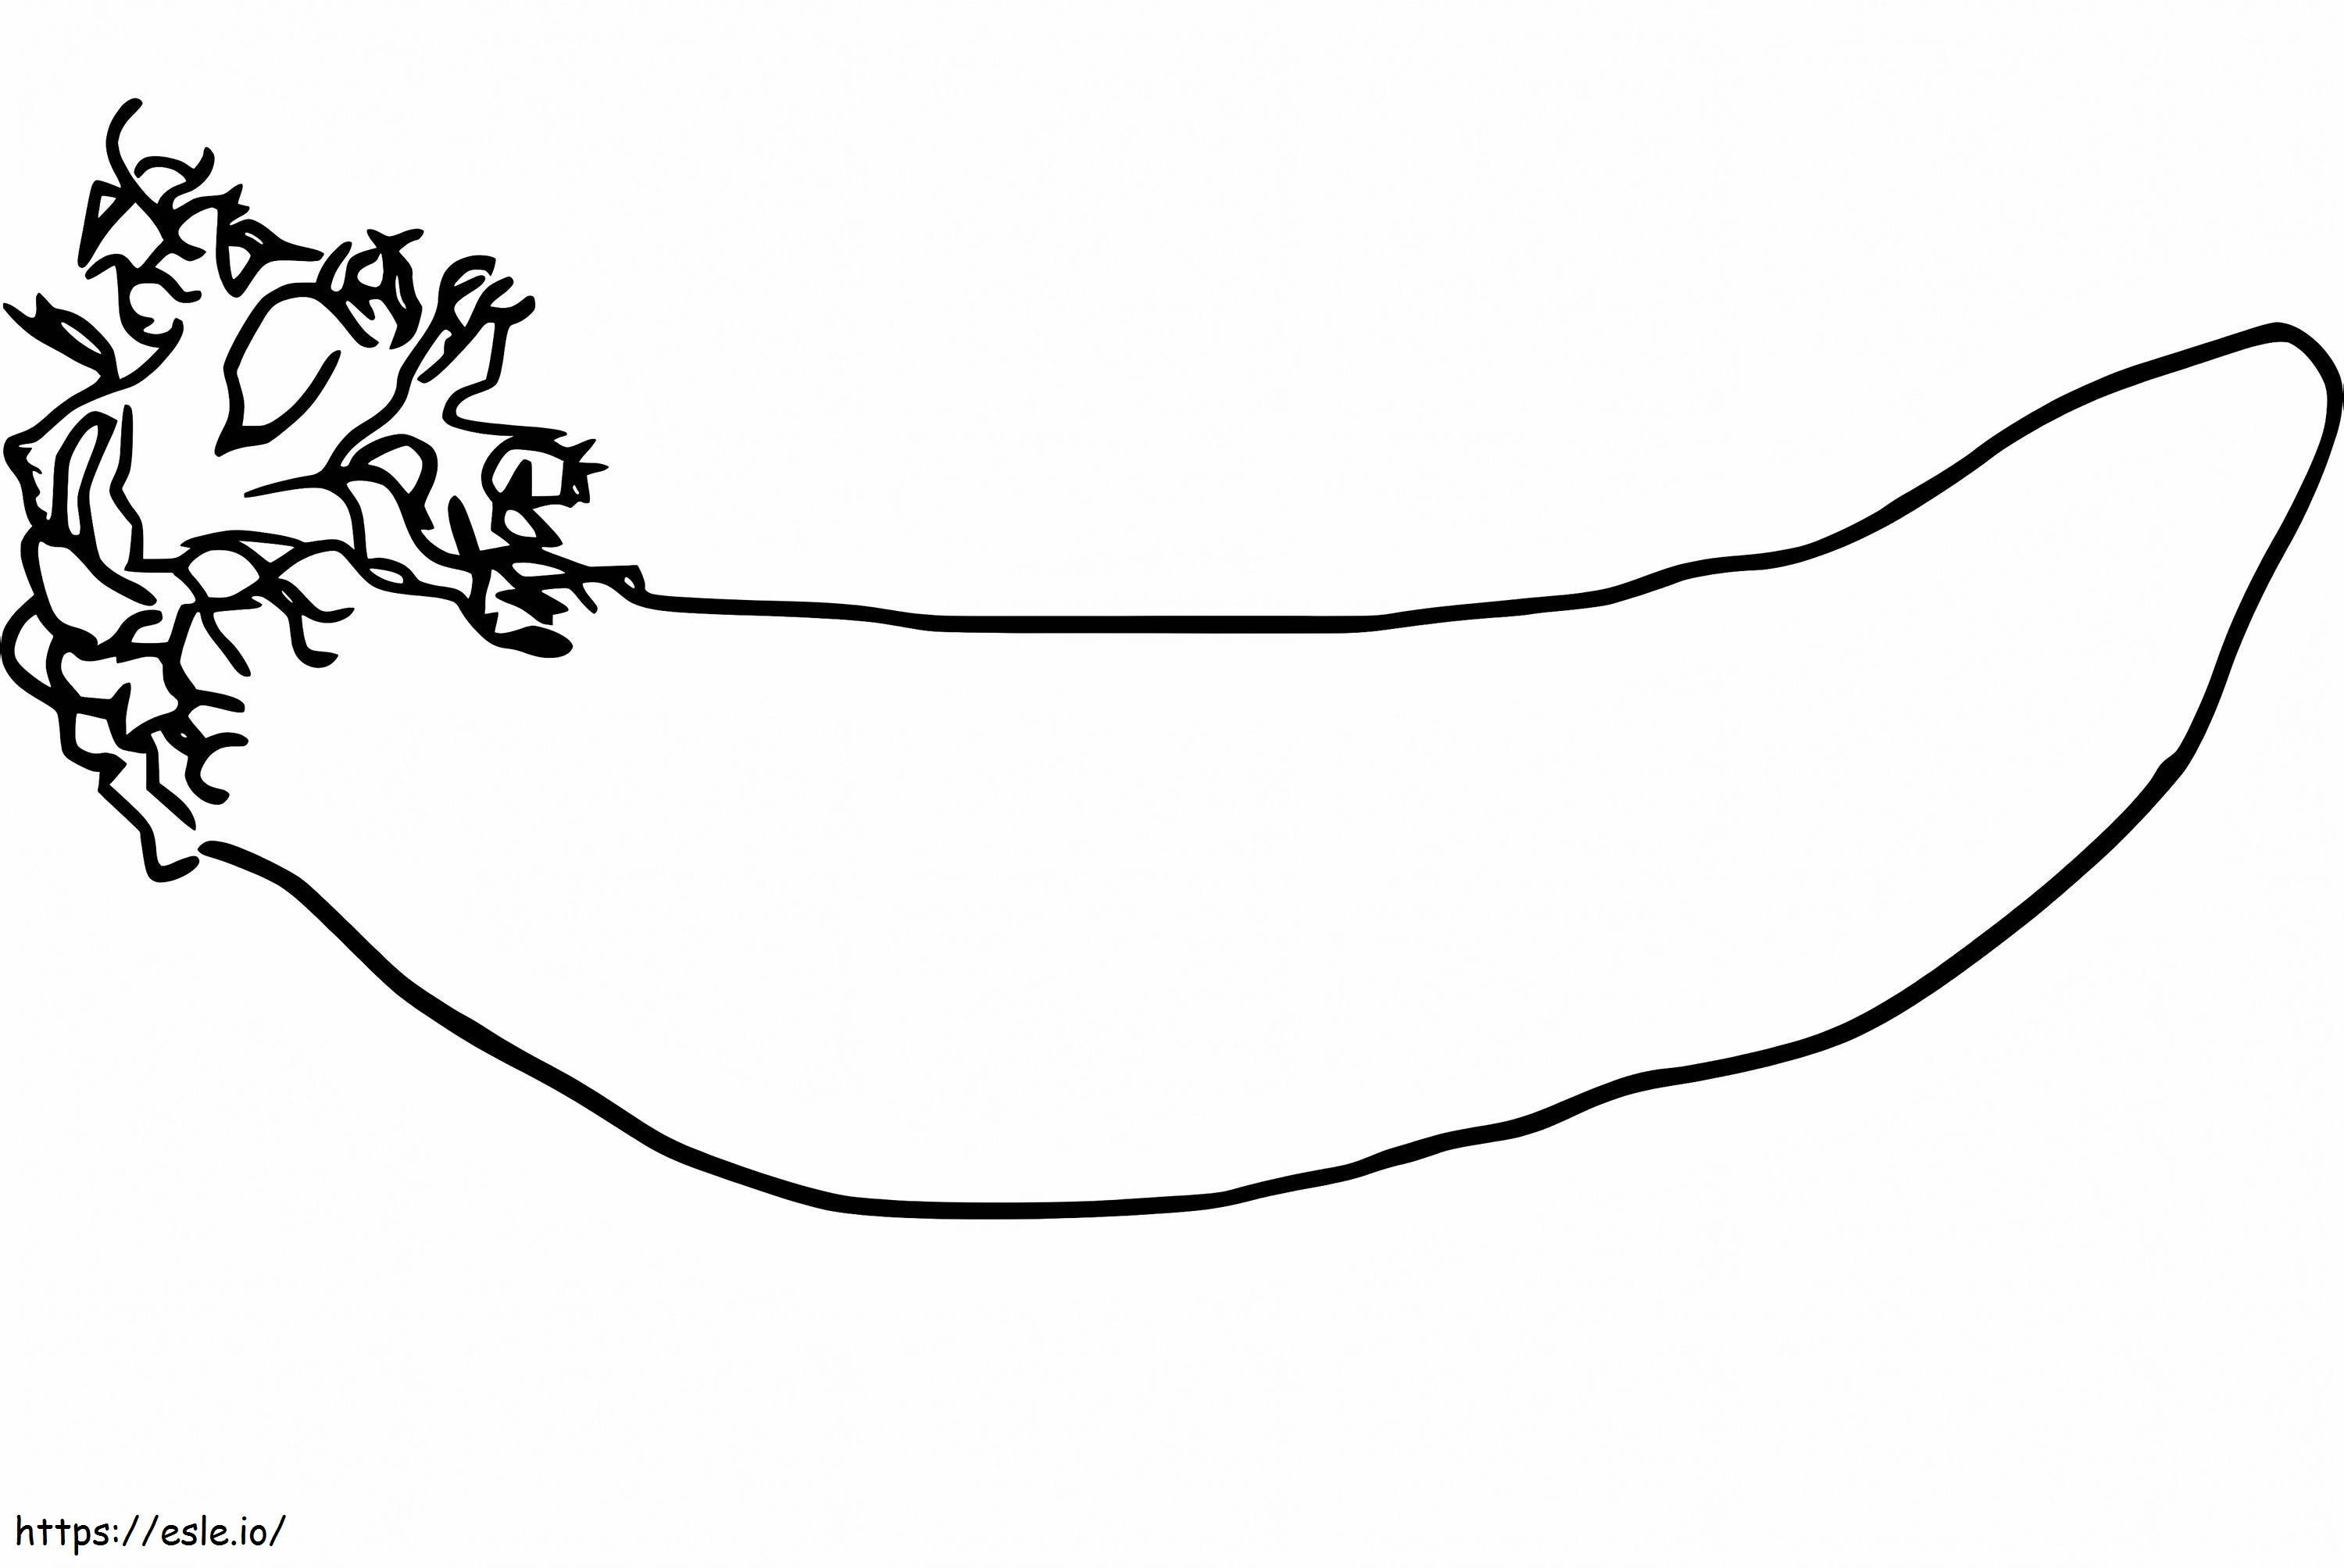 Einfache Seegurke ausmalbilder